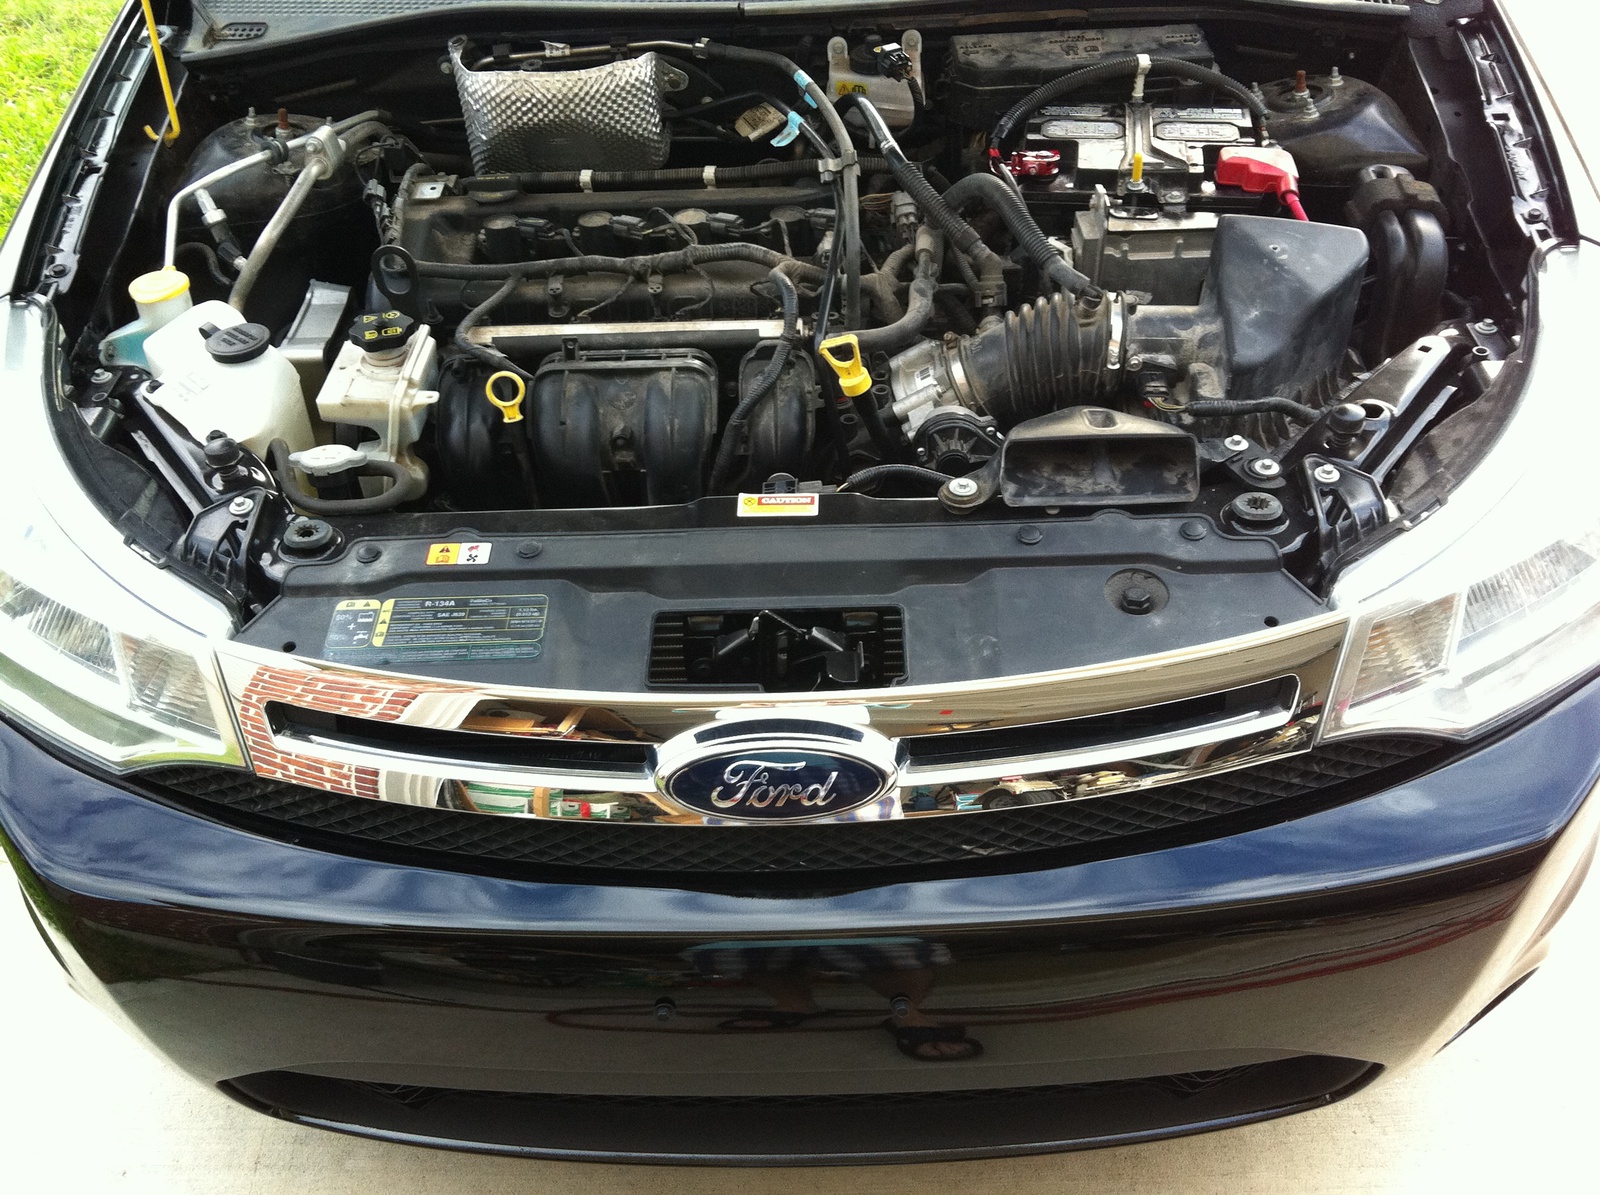 2001 Ford focus se transmission problem #7